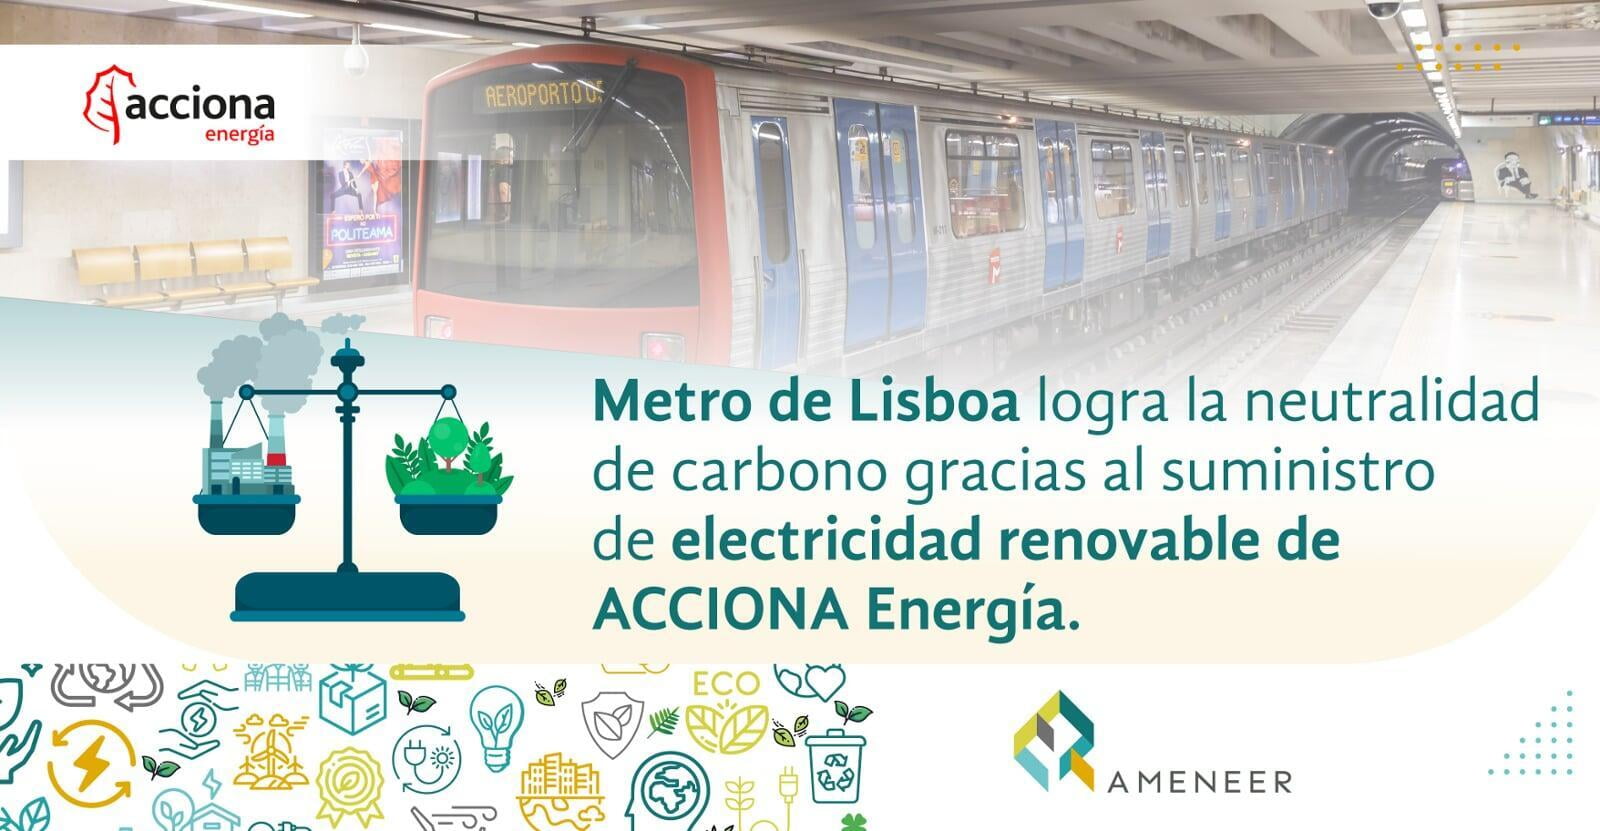 Metro de Lisboa logra la neutralidad de carbono gracias al suministro de electricidad renovable de ACCIONA Energía